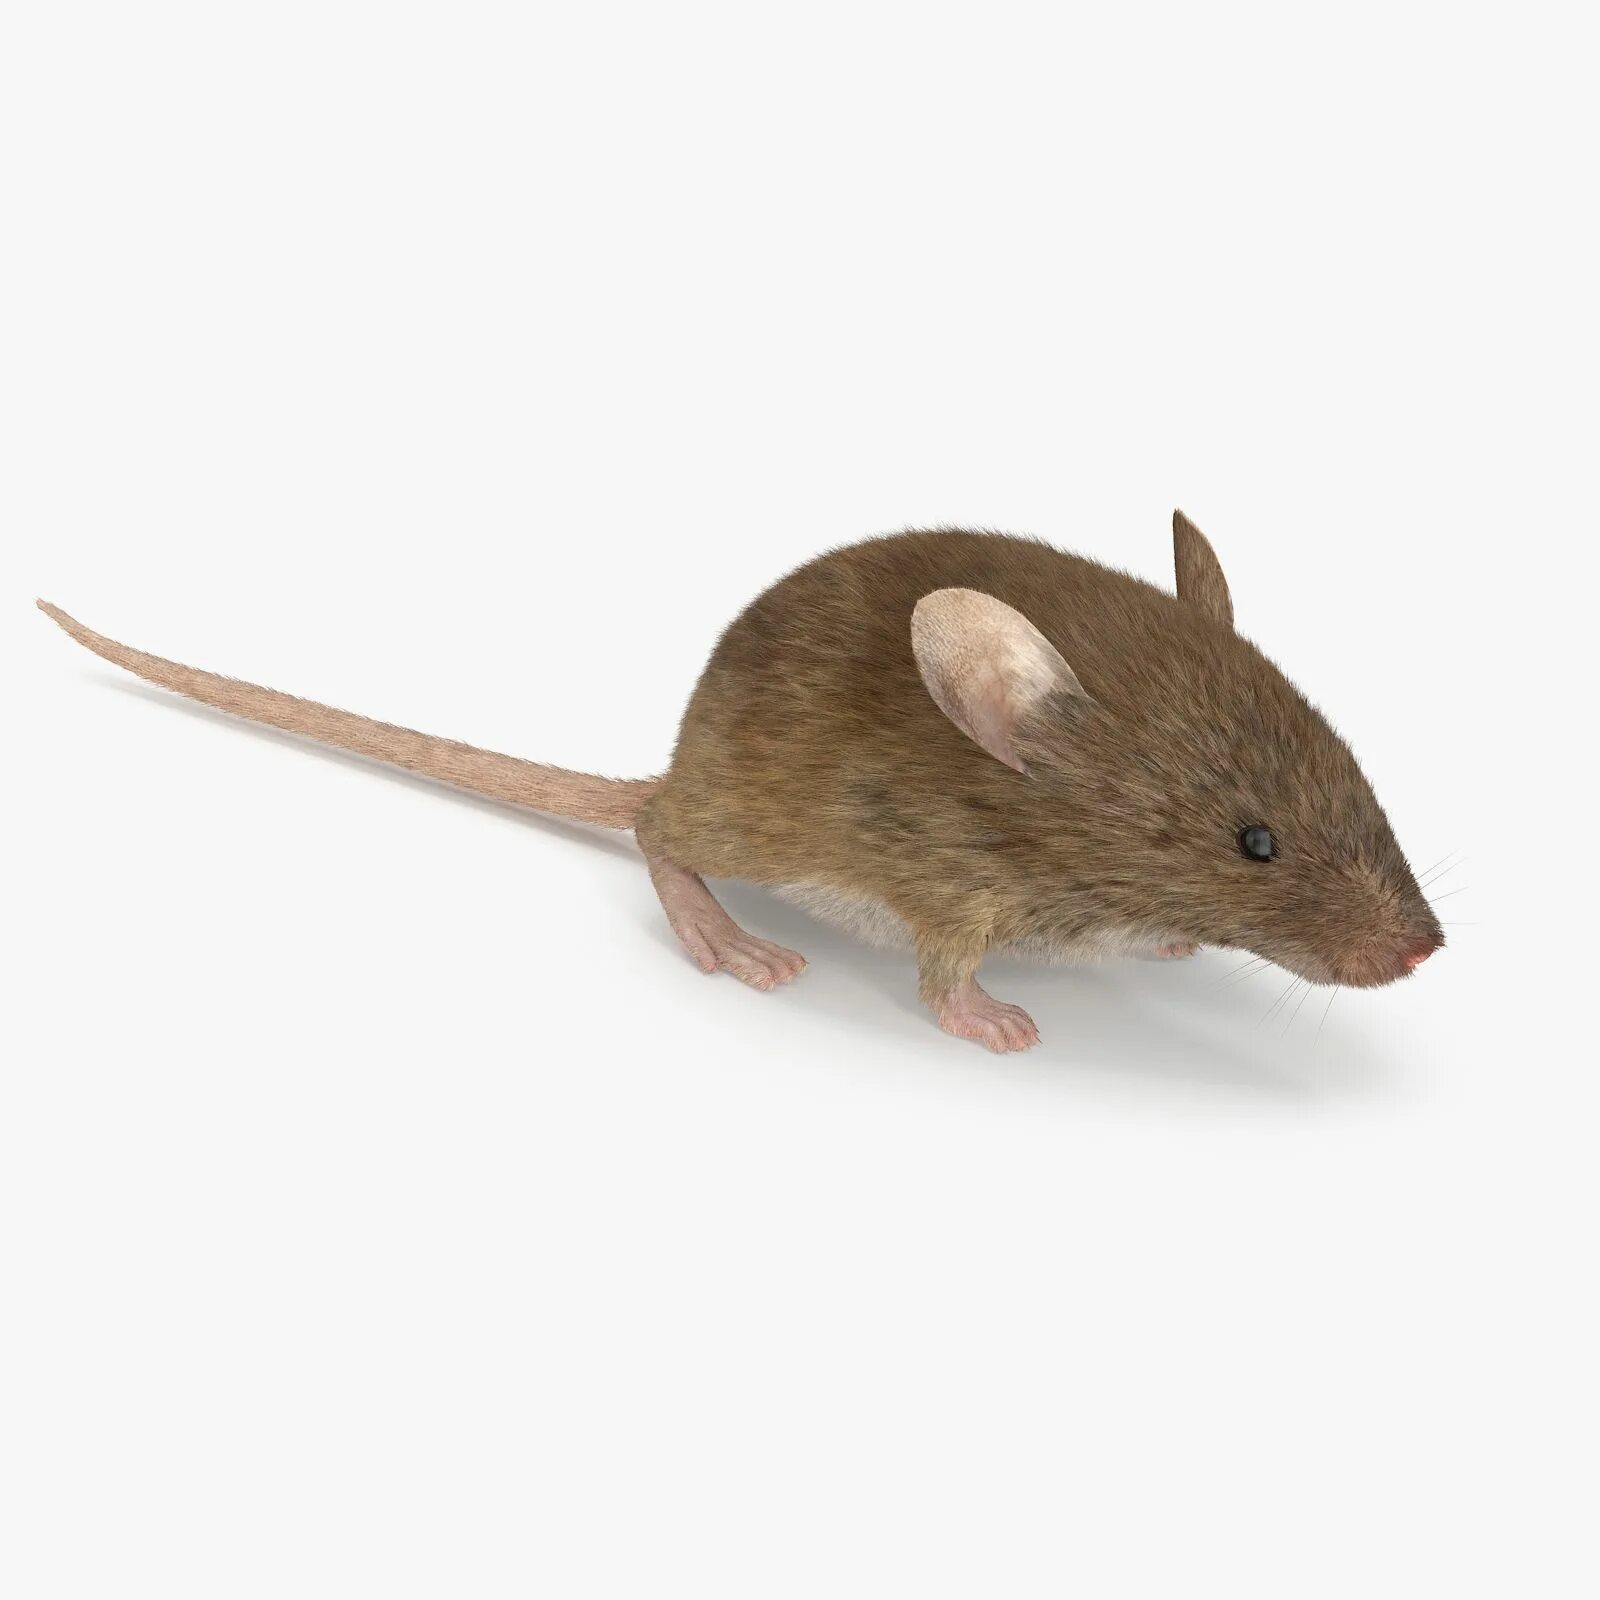 Мыши д. Коричневая мышь. Коричневый мышонок. Мышь Живая коричневая. Мышь коричневого цвета.